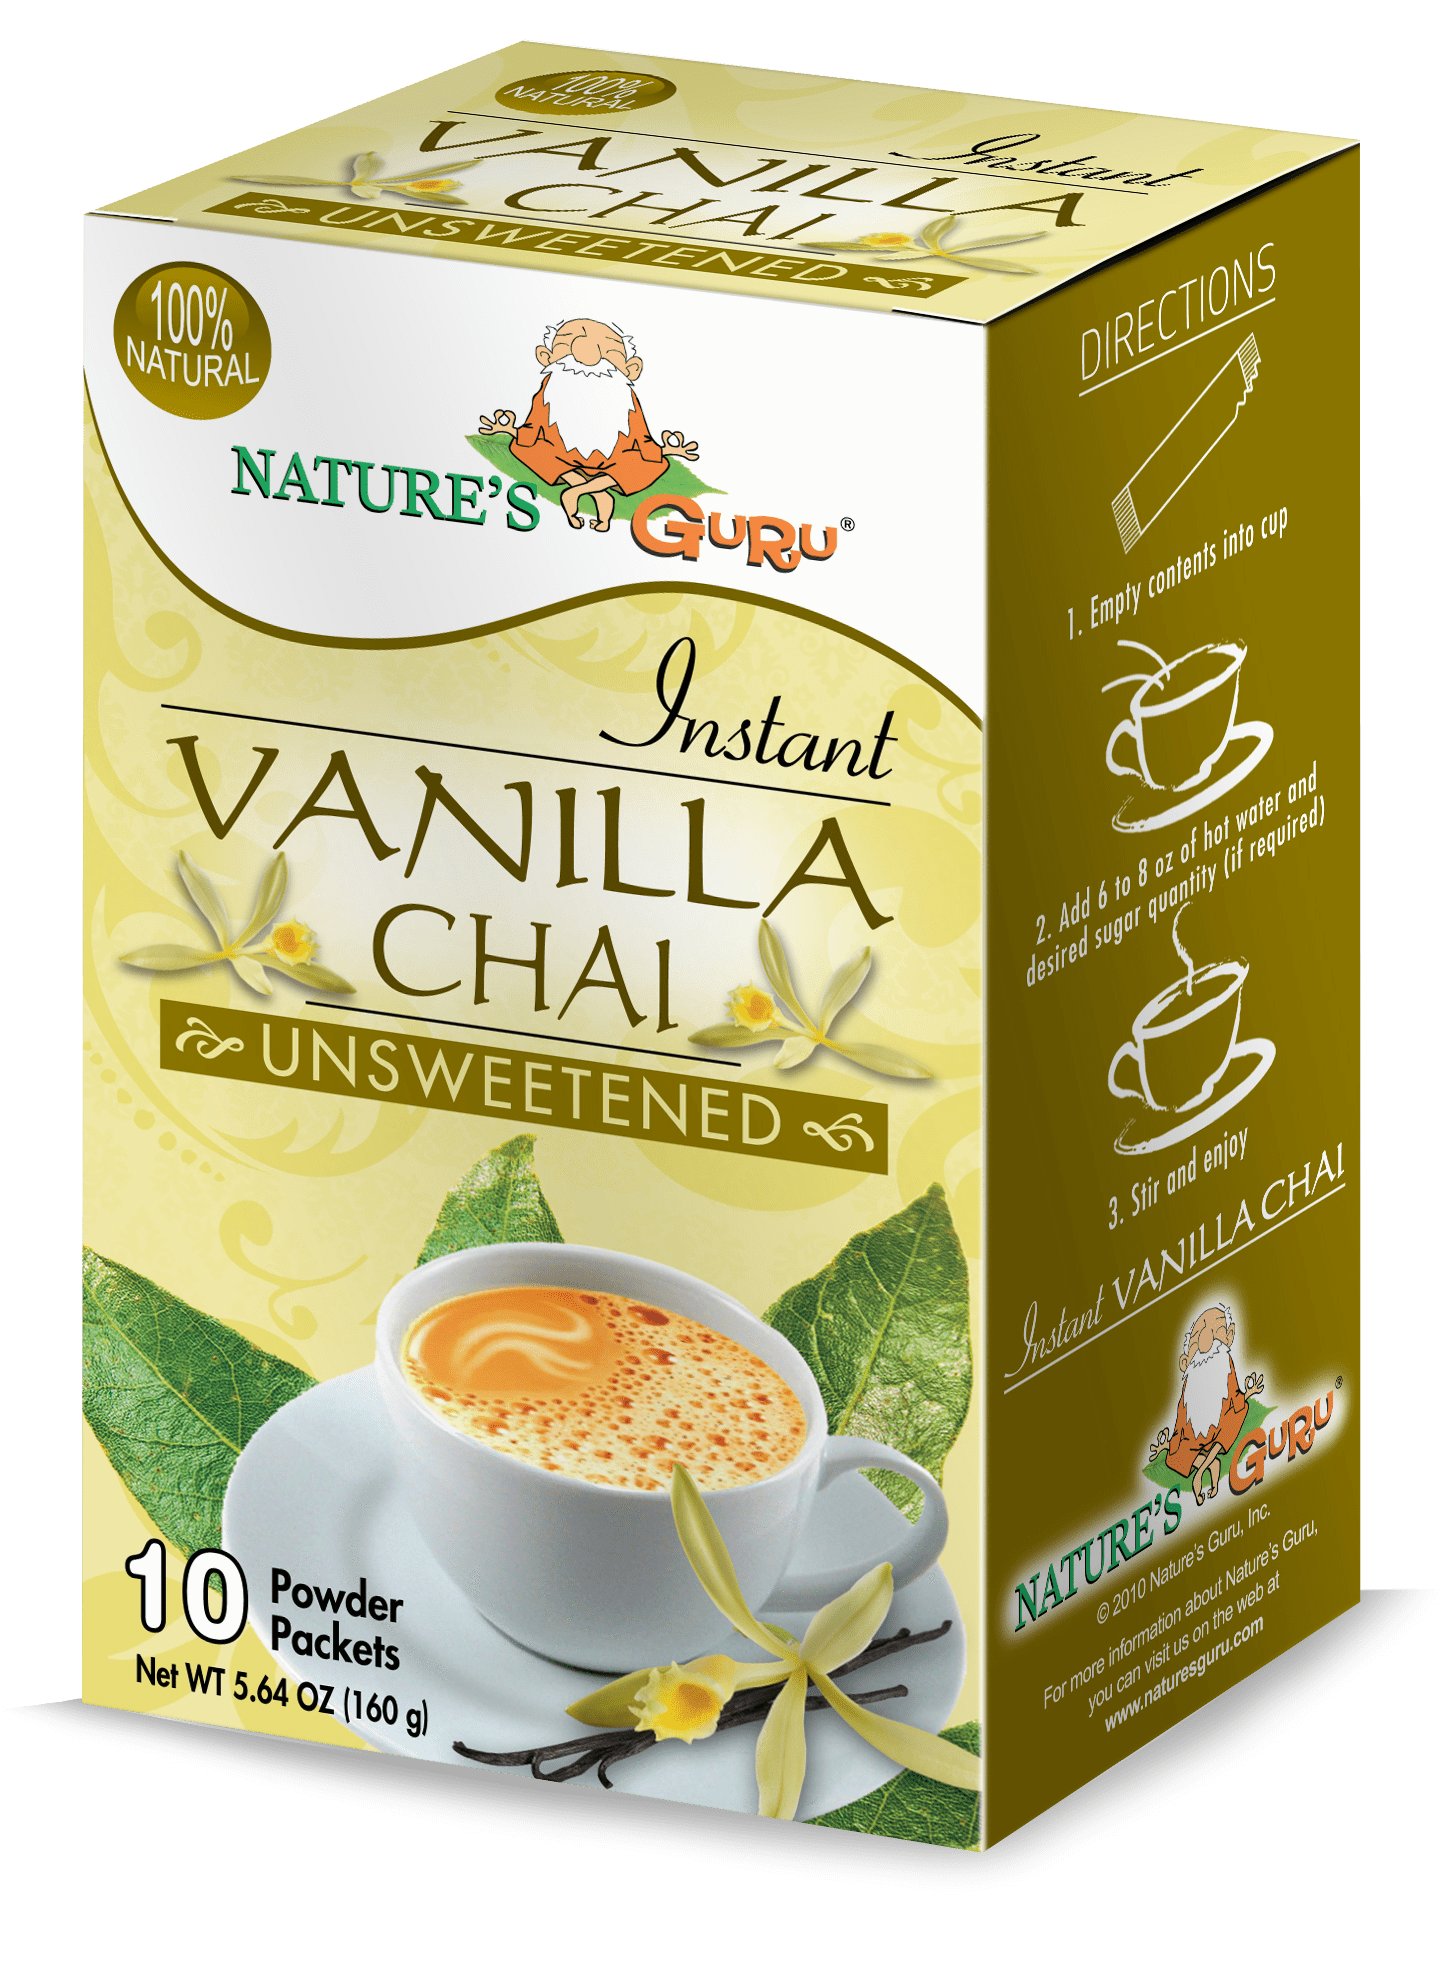 https://www.naturesguru.com/cdn/shop/products/nature-s-guru-chai-nature-s-guru-vanilla-chai-unsweetened-10-ct-box-pack-of-1-unsweetened-nature-s-guru-vanilla-chai-unsweetened-799438315.png?v=1587270716